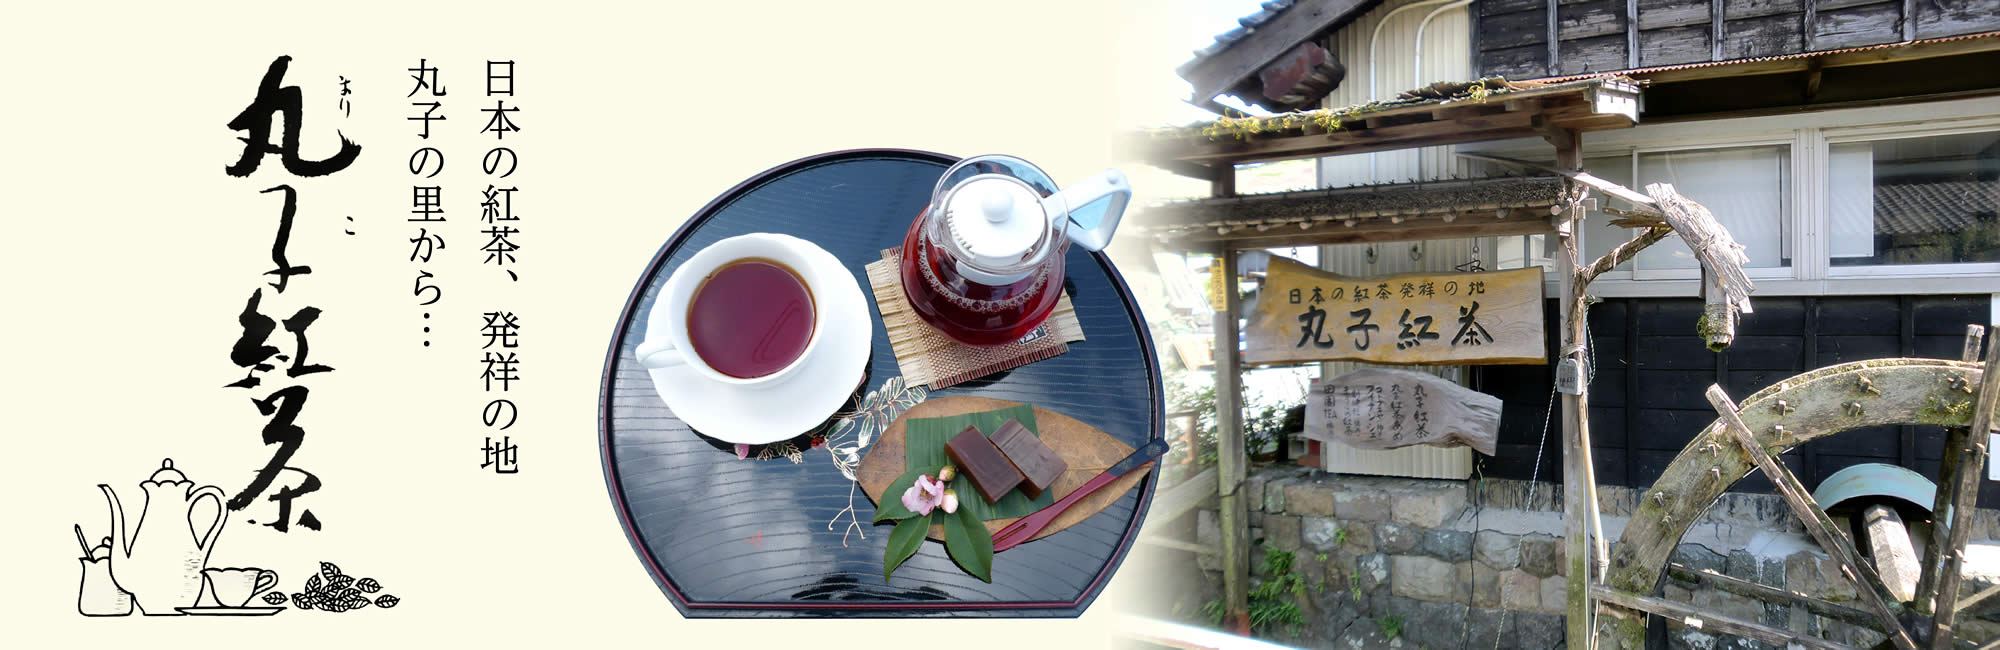 丸子紅茶のオフィシャルサイト